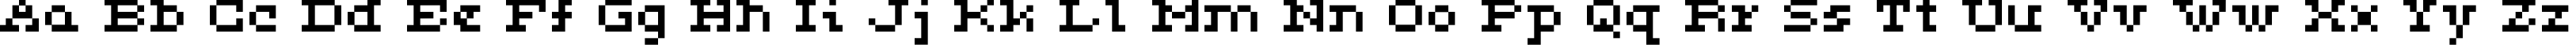 Пример написания английского алфавита шрифтом ceriph 05_53